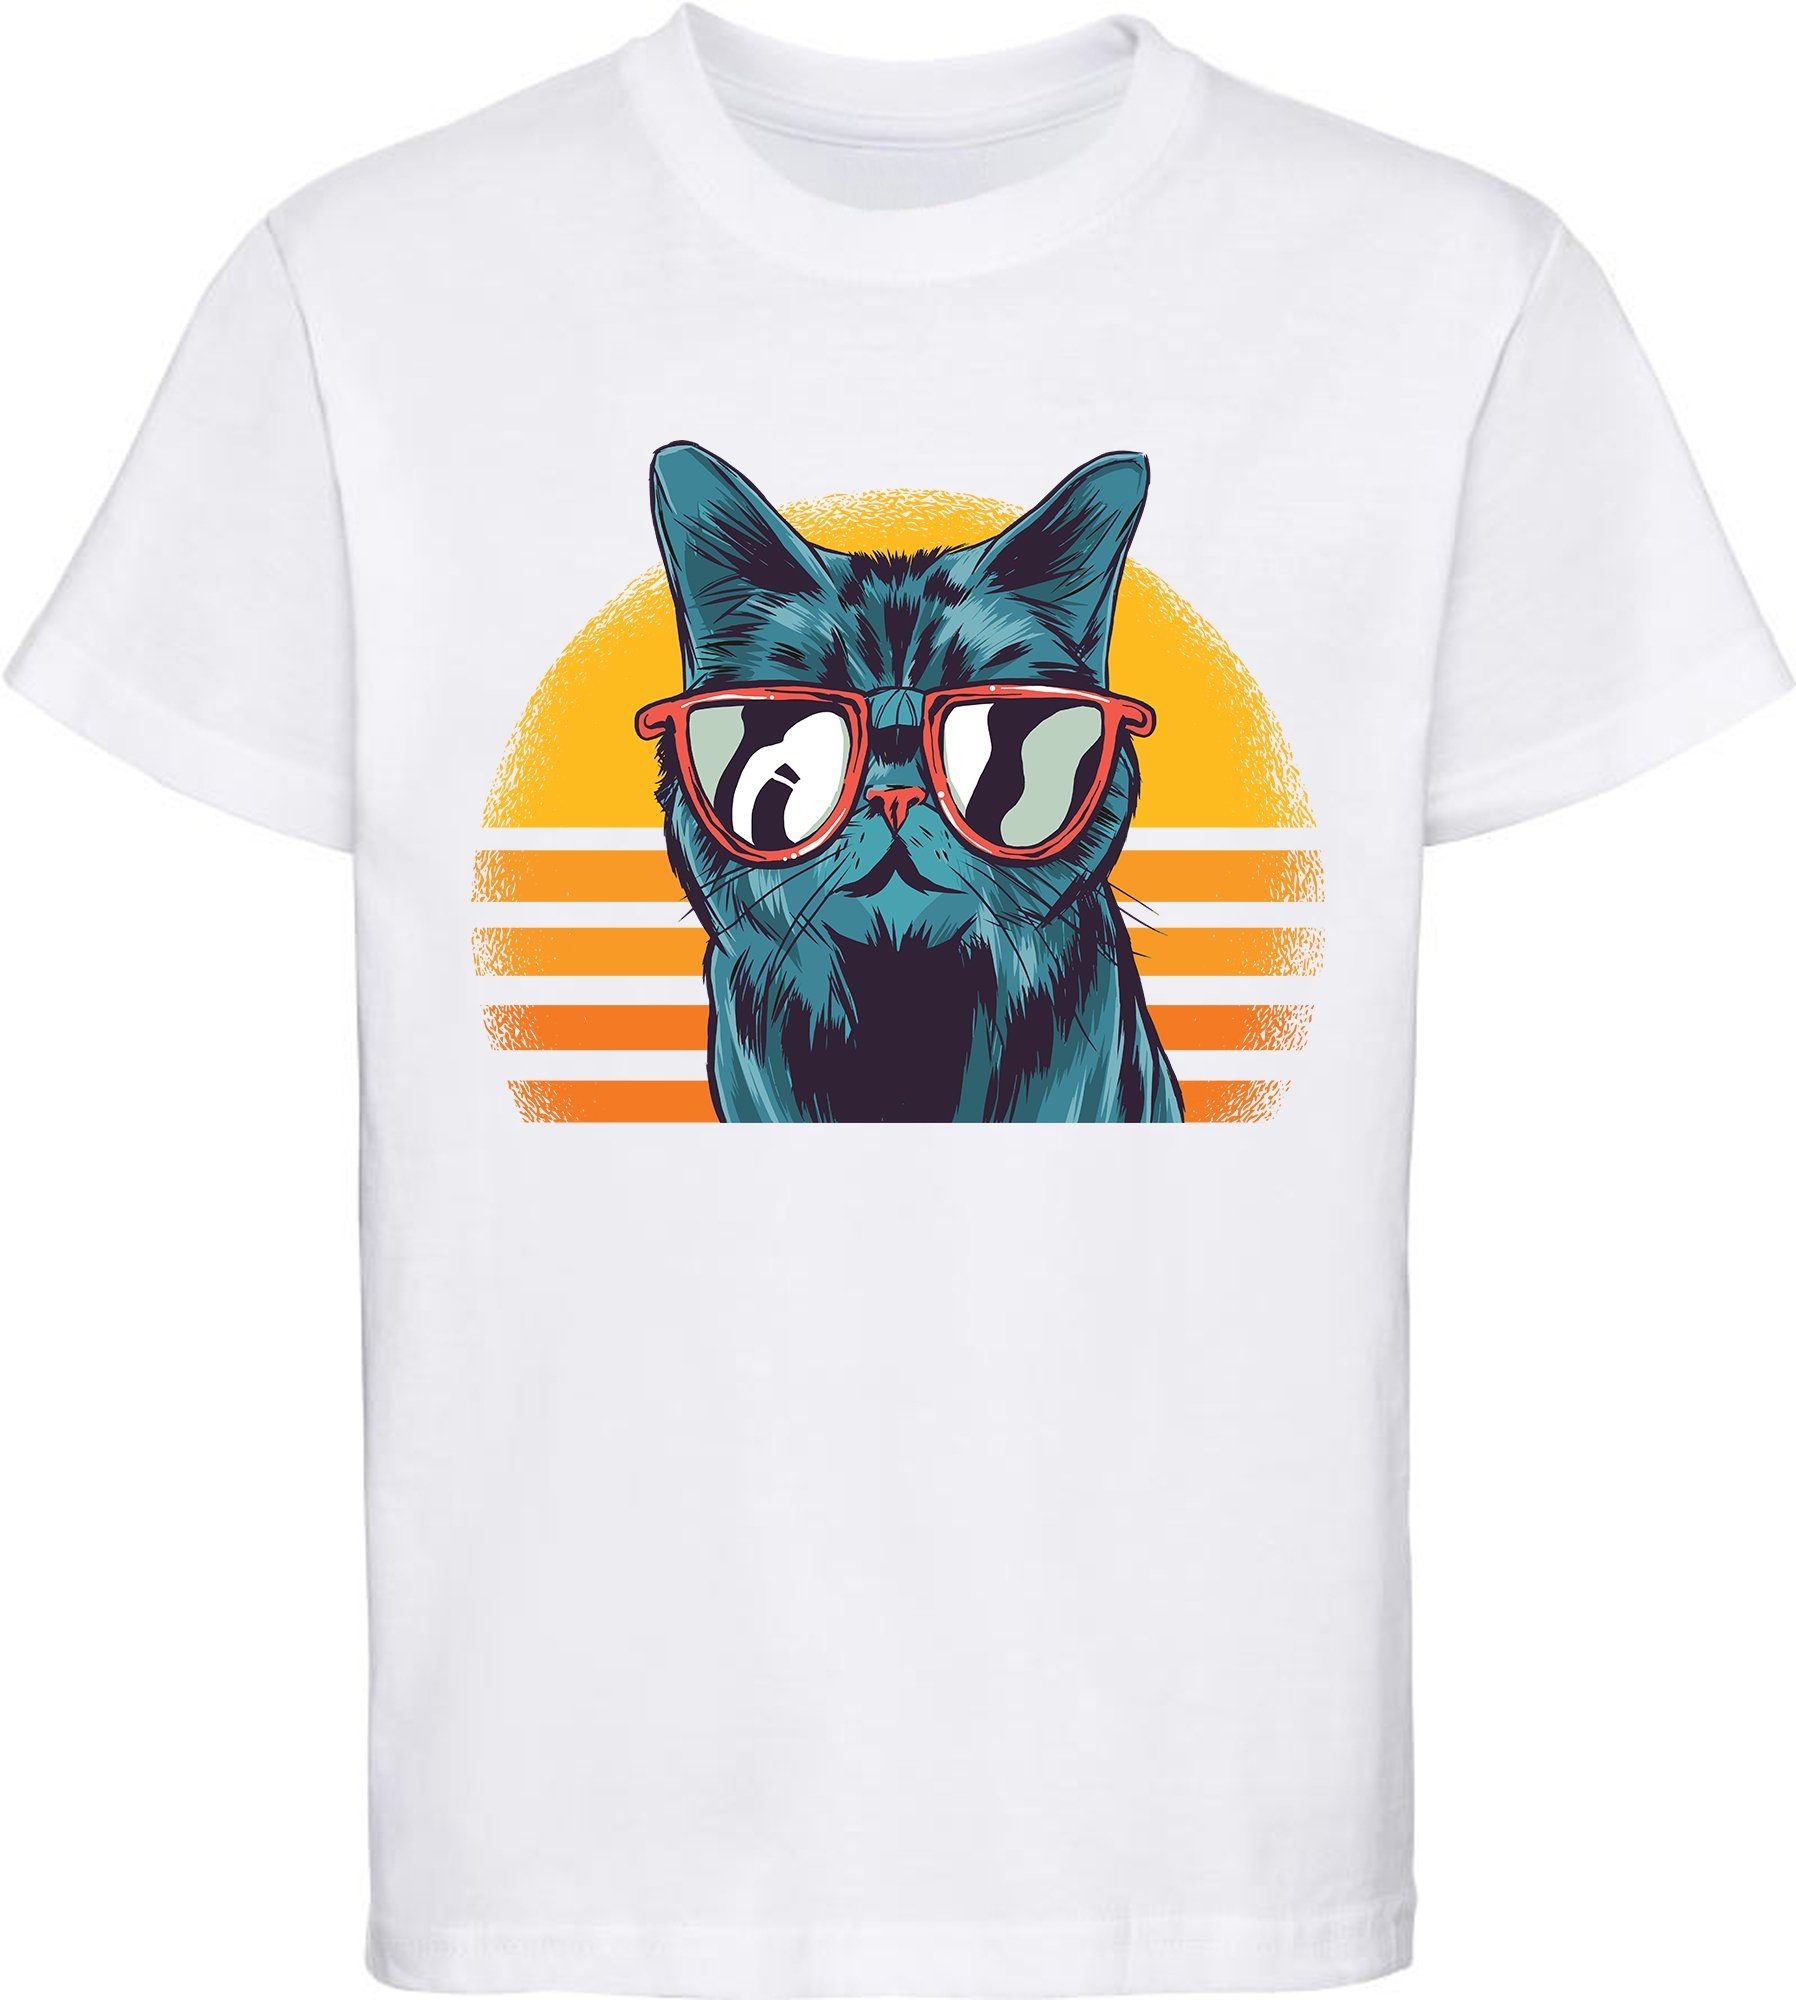 MyDesign24 Print-Shirt bedrucktes Kinder Mädchen T-Shirt coole Retro Katze mit Sonnenbrille Baumwollshirt mit Katze, weiß, schwarz, rot, rosa, i102 weiss